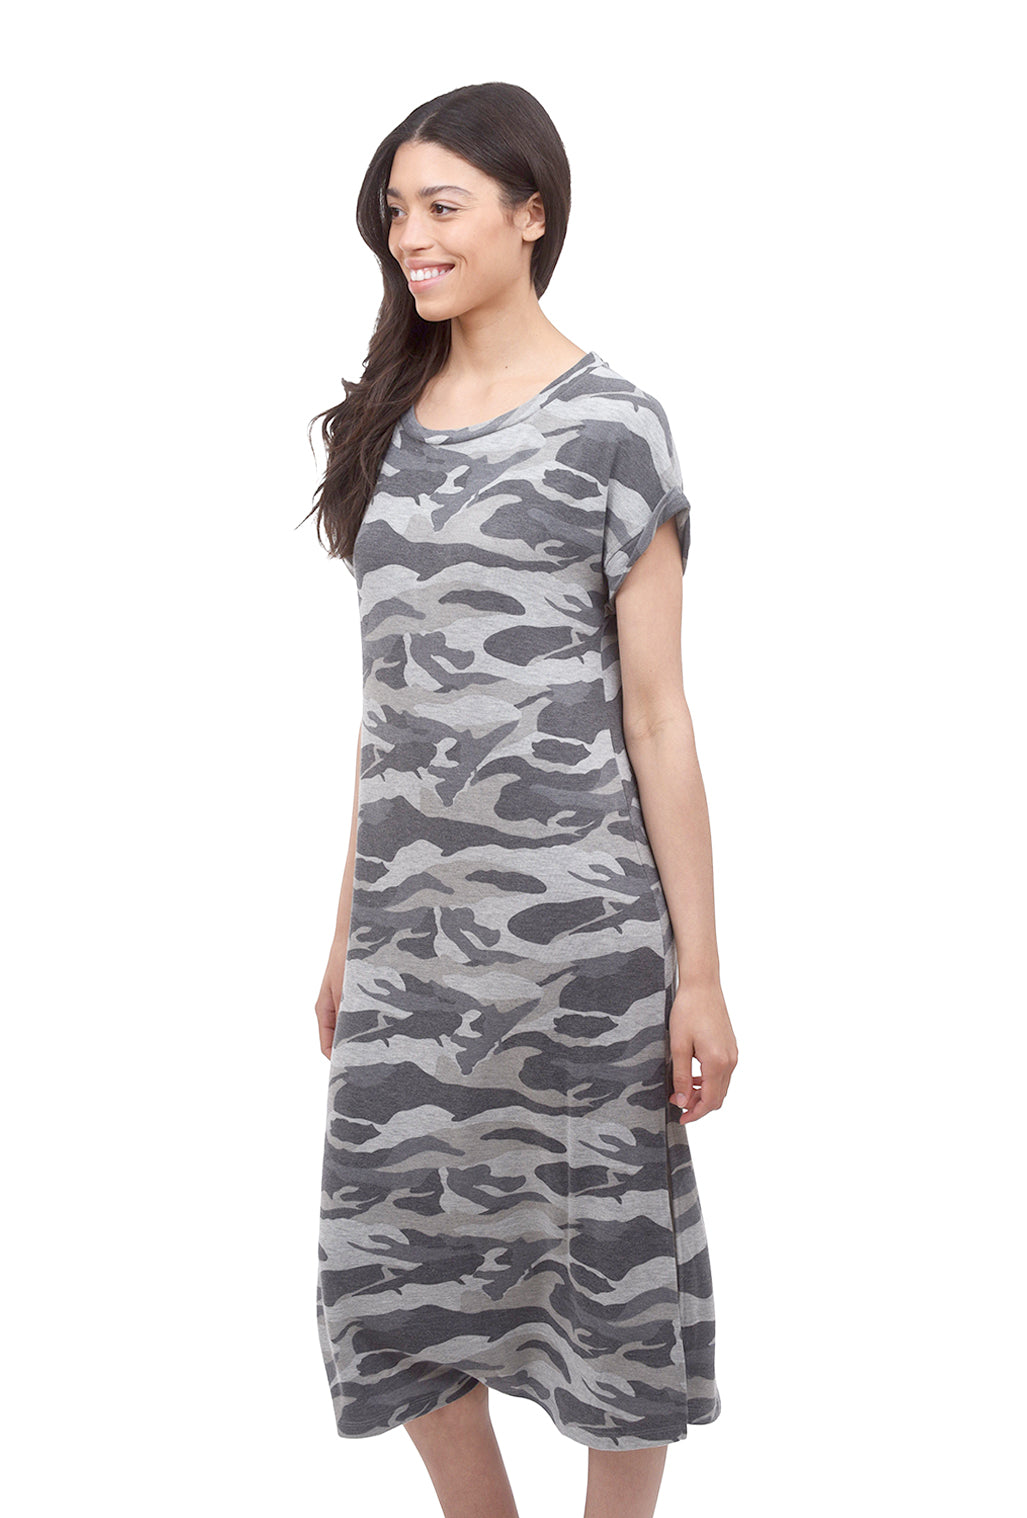 Mystree Side Slit Maxi Dress, Army Camo